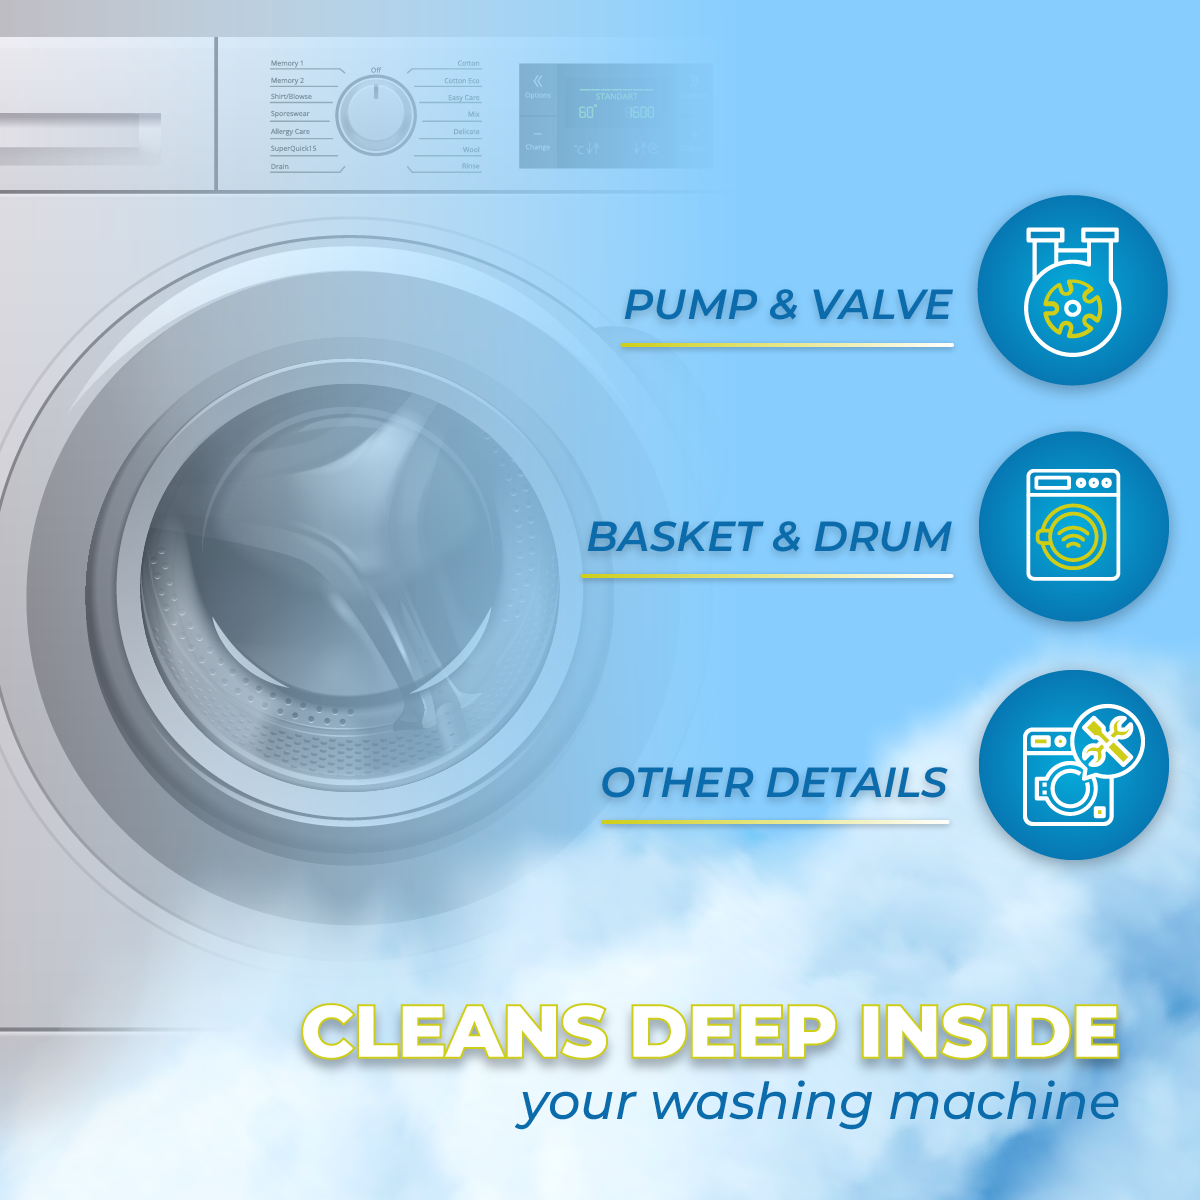 Wash Warrior Washing Machine Cleaner, Washer Machine Cleaner